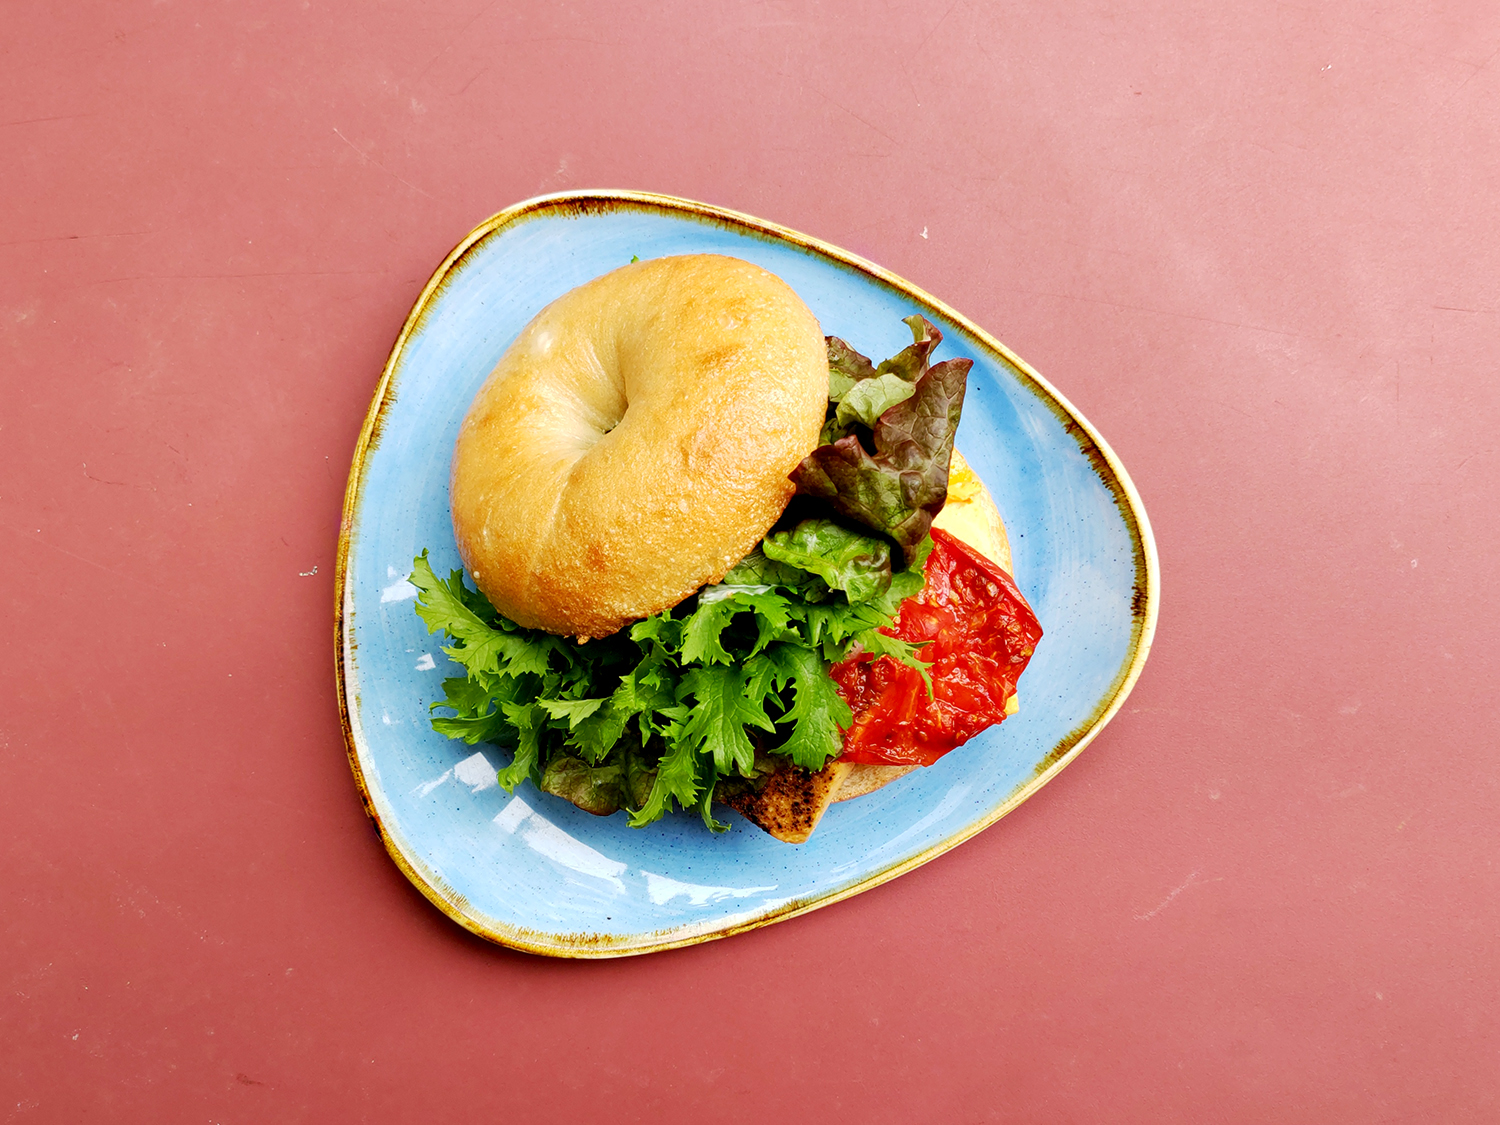 エッグフランベーグルサンドの具材は、ベーグルからはみ出すほどのボリュームで、食べ応えあり。